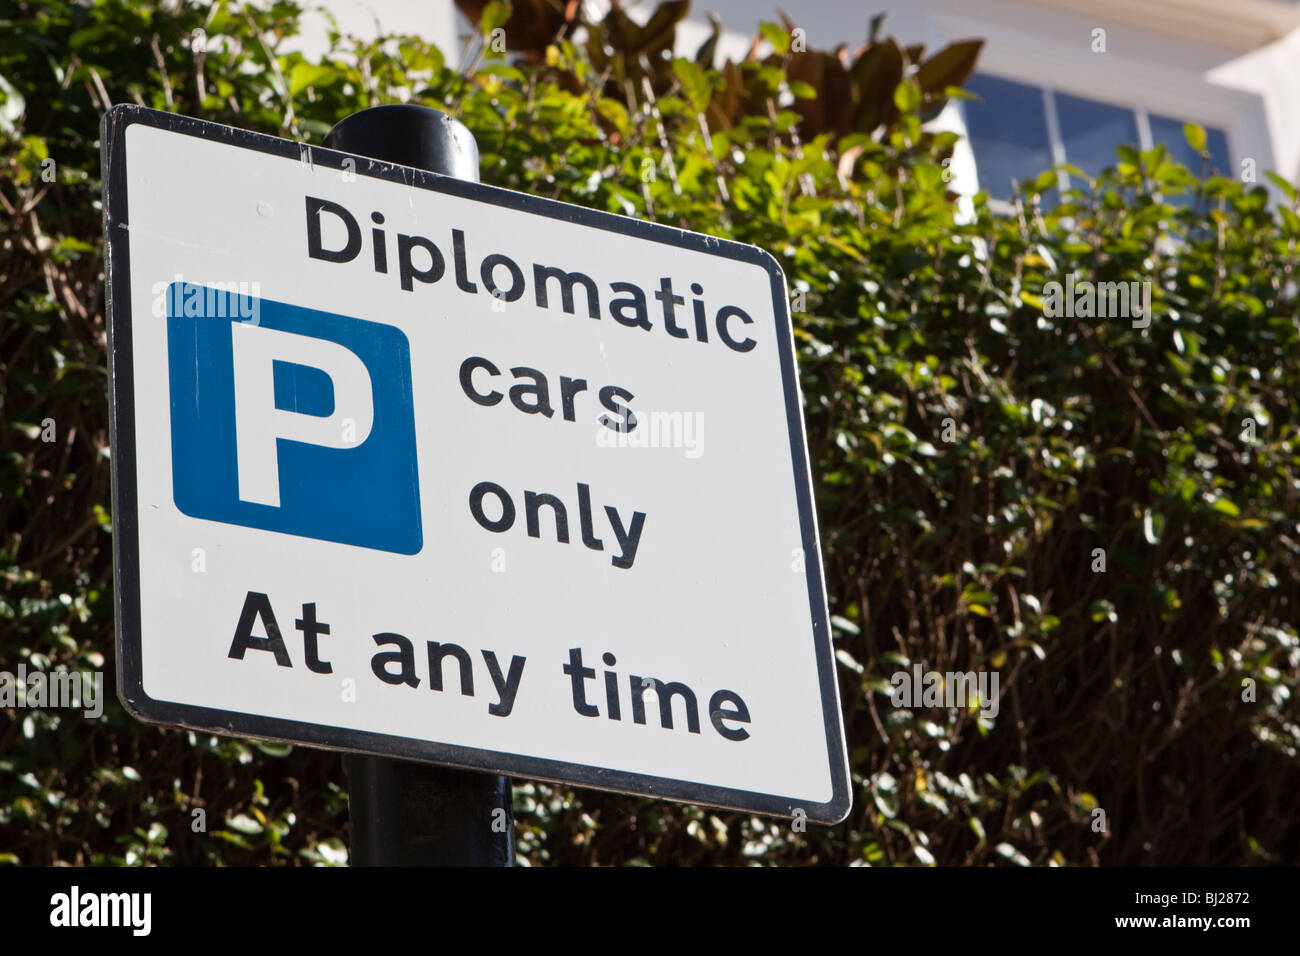 Parking pour les diplomates uniquement dans Kensington Londres Banque D'Images